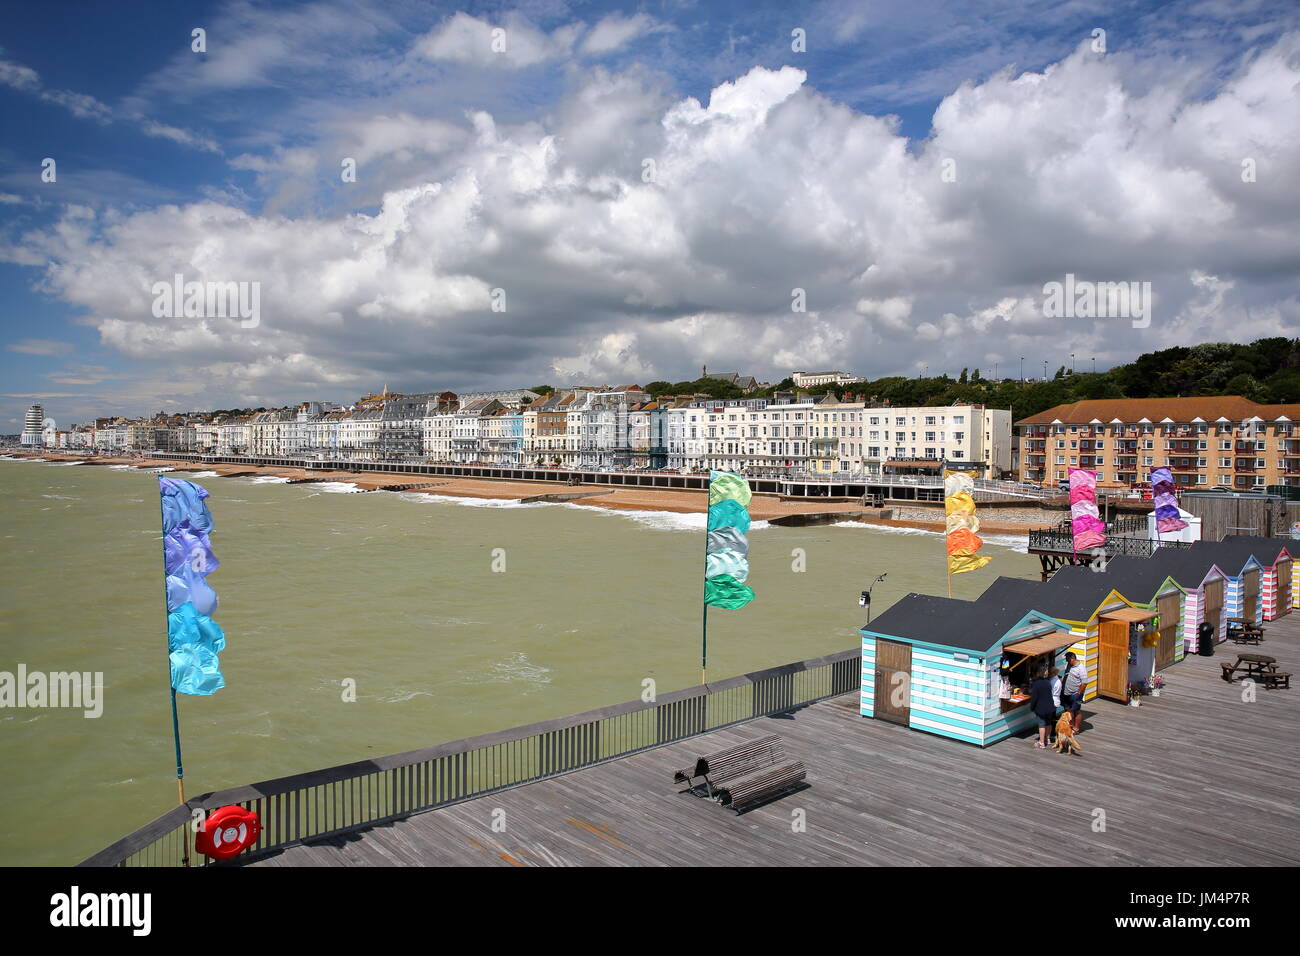 HASTINGS, Regno Unito - Luglio 23, 2017: vista del mare dal molo (ricostruita e aperta al pubblico nel 2016) con capanne colorate in primo piano e un beaut Foto Stock